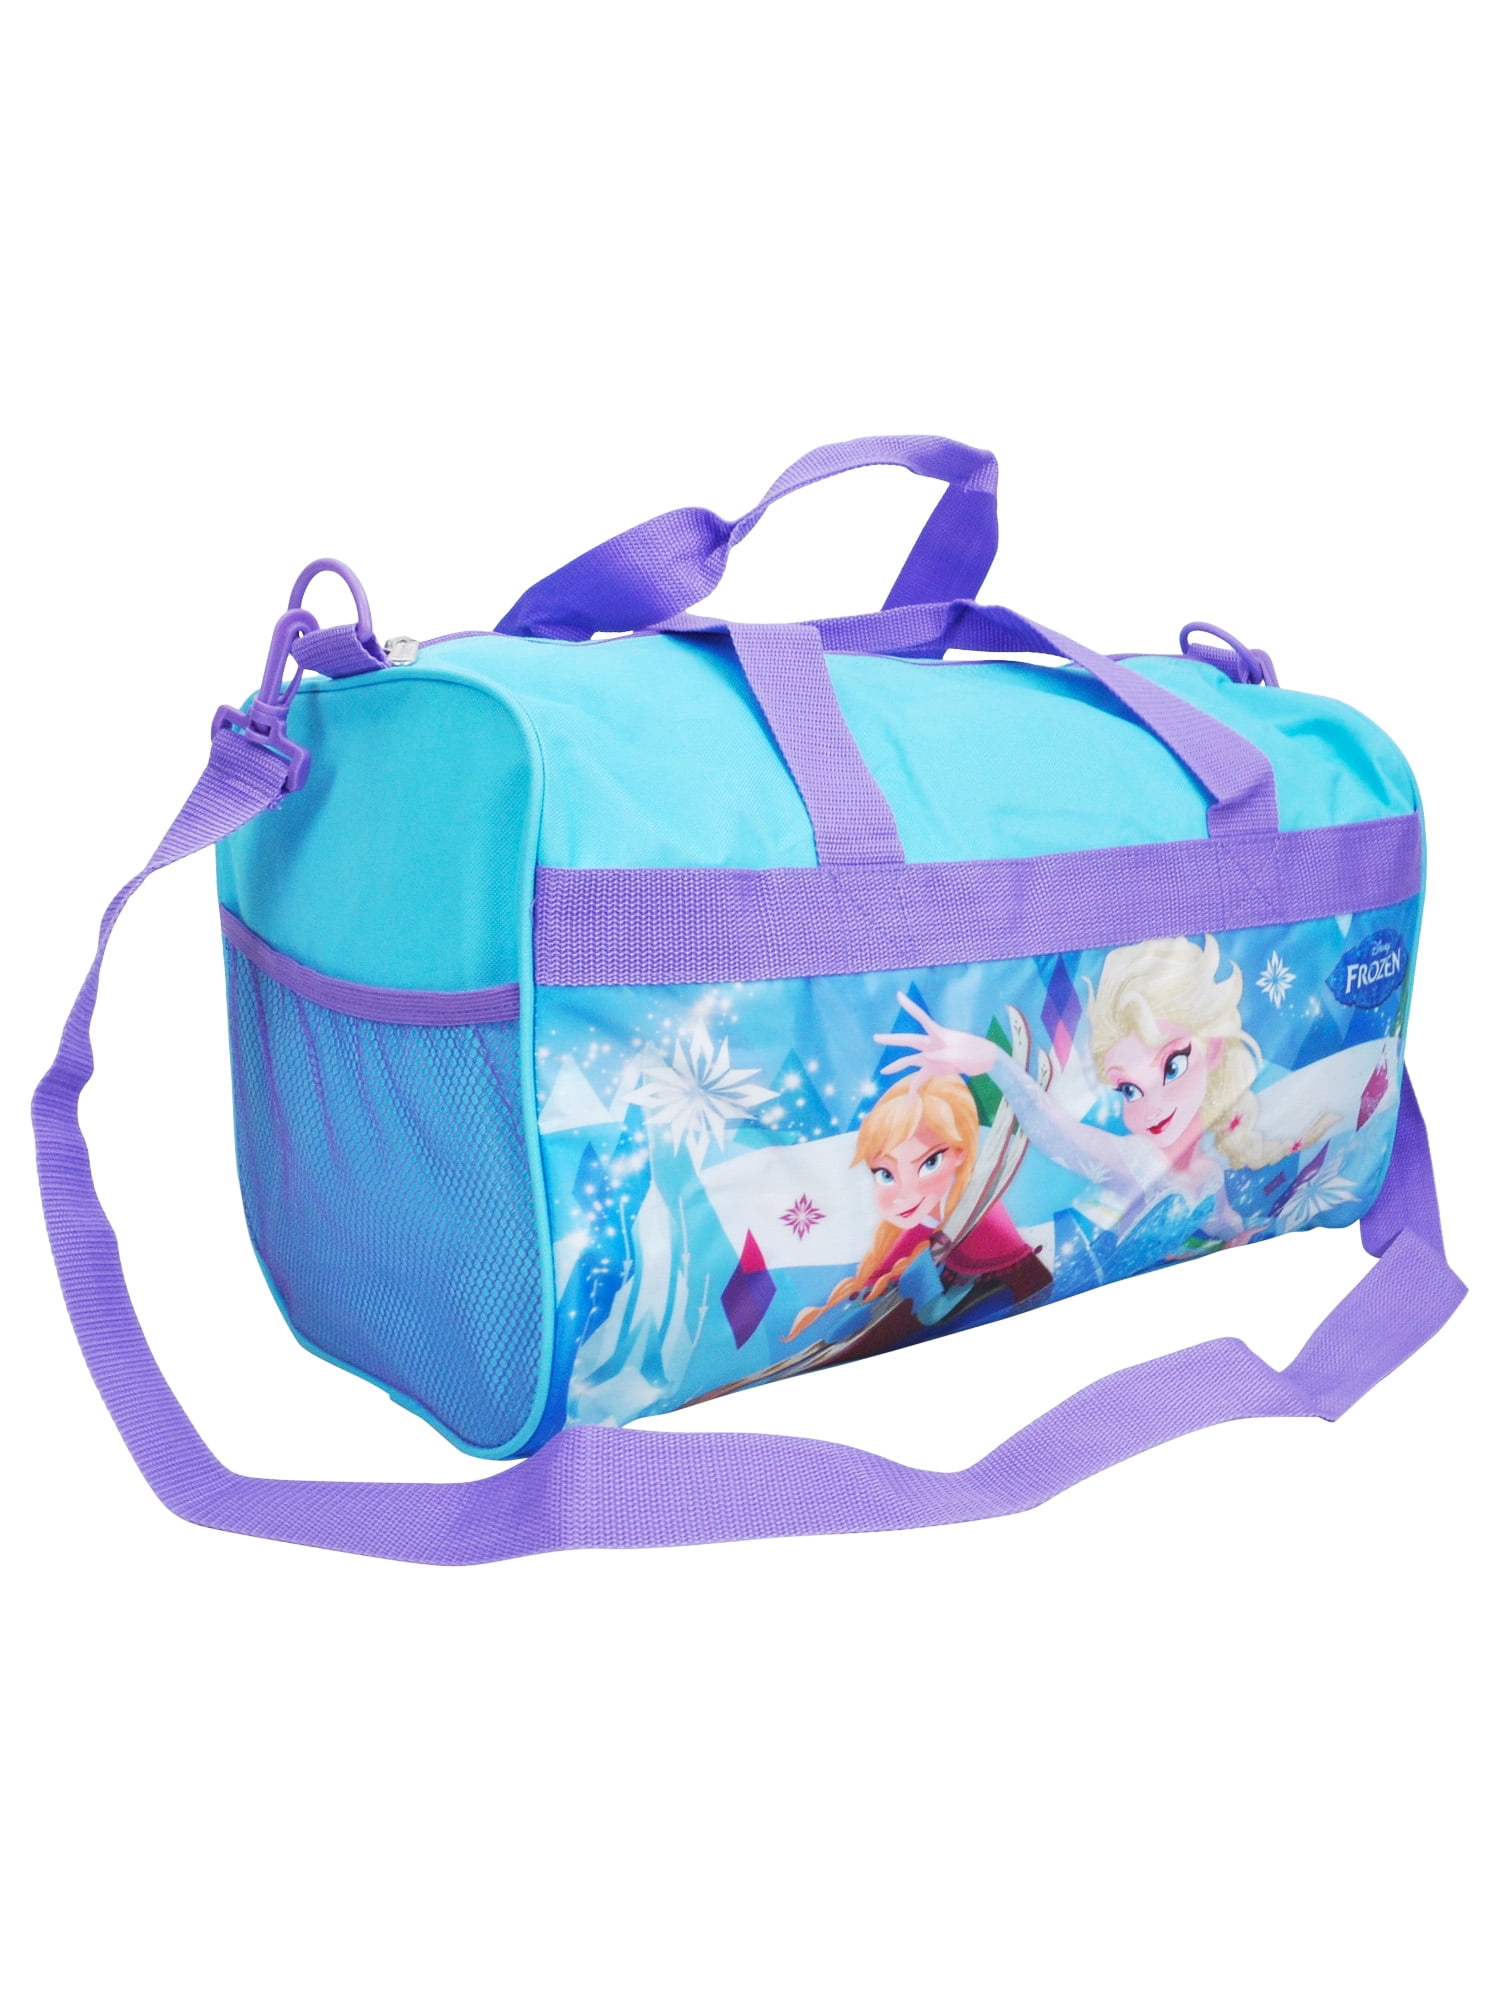 Disney Frozen Bags & Accessories in Clothing - Walmart.com